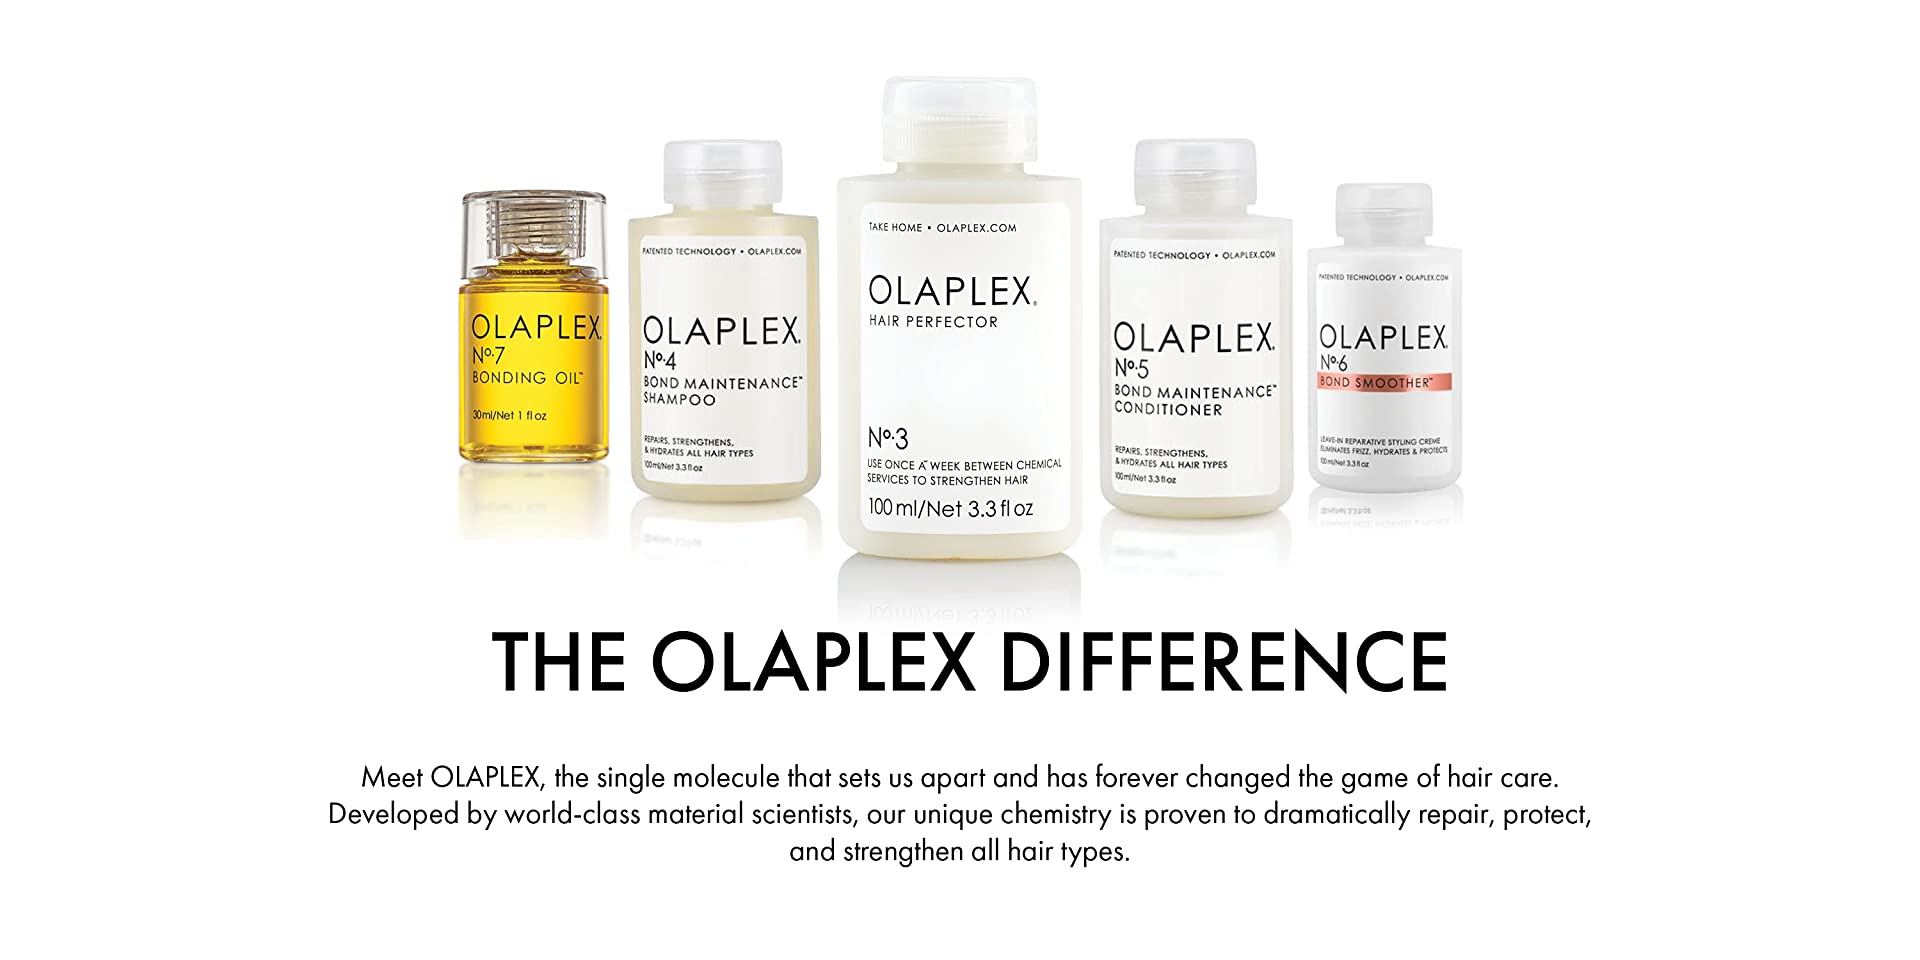 Olaplex 2 vs Olaplex What's the